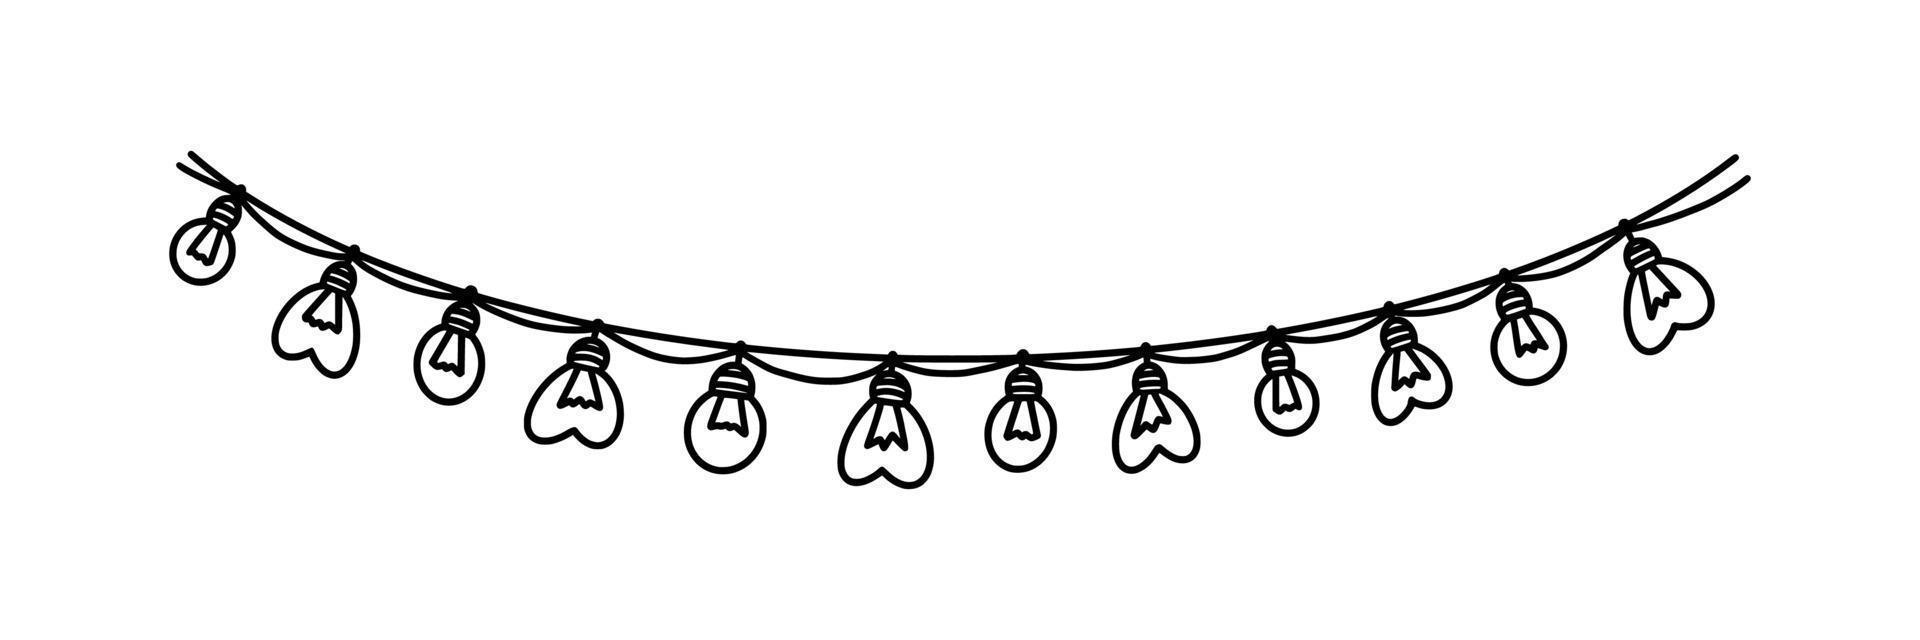 guirlanda com lâmpadas para carnaval ou celebração. guirlanda de lâmpada de decoração isolada no fundo branco. ilustração vetorial vetor